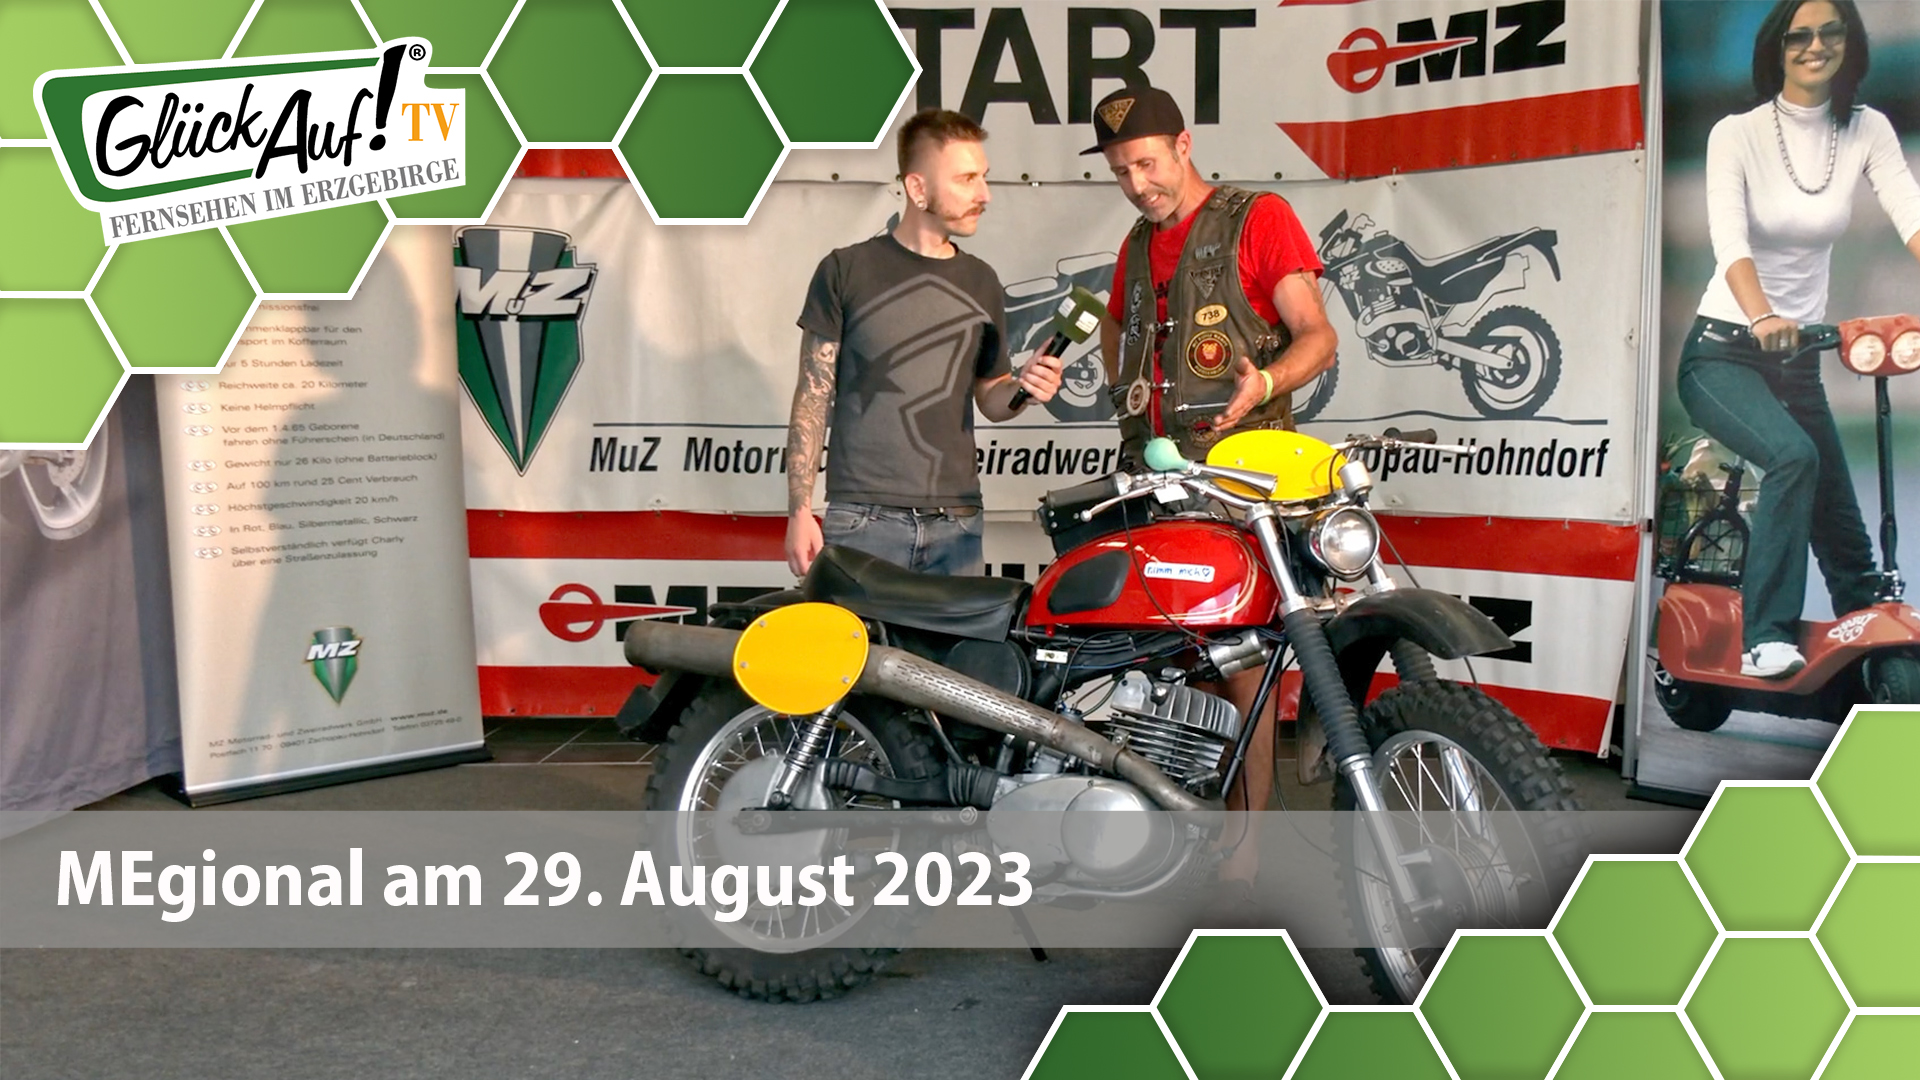 MEgional am 29. August 2023 mit dem Motorradsommerfest in Hohndorf